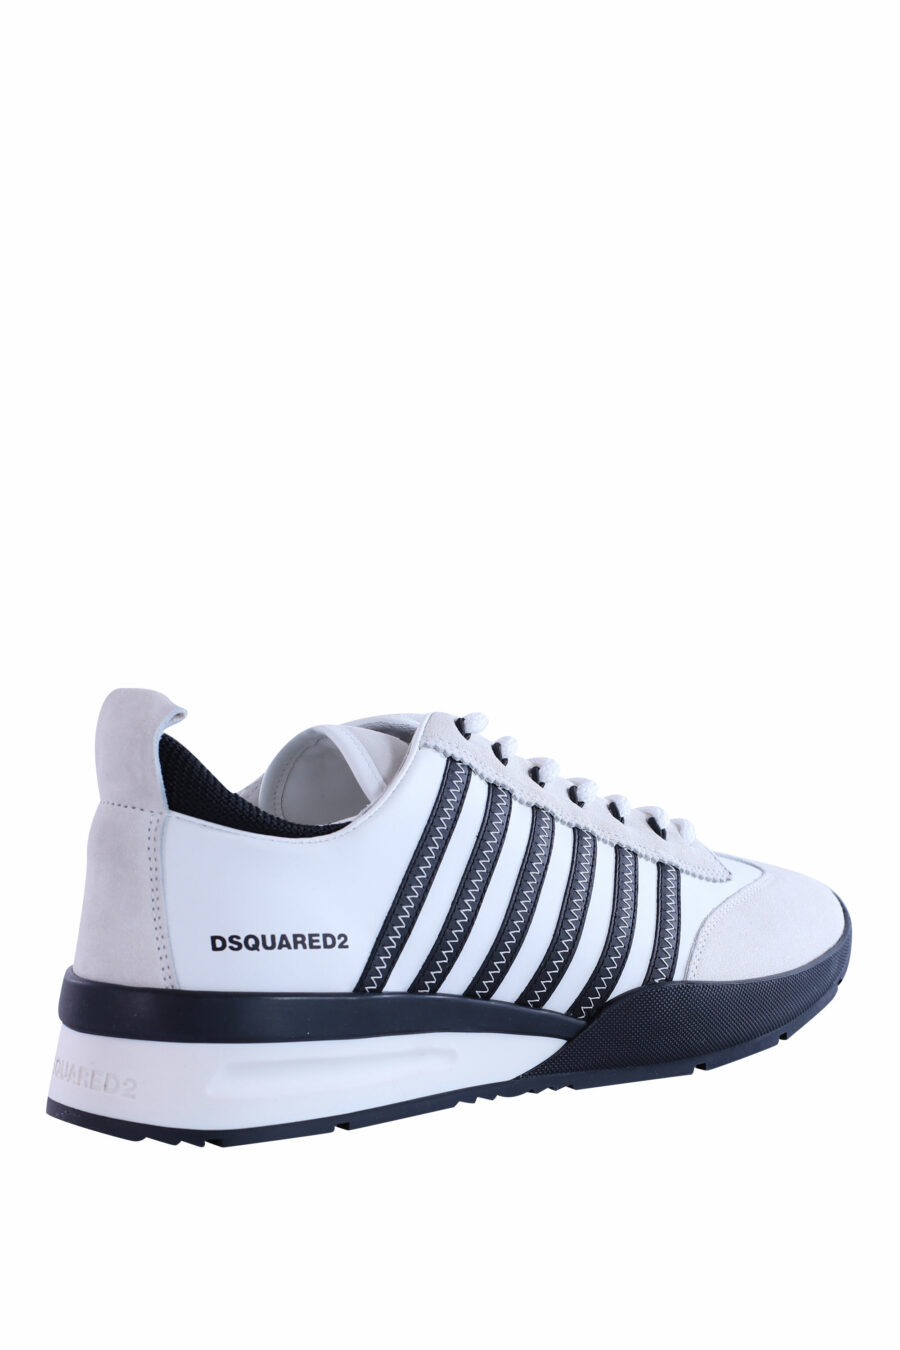 Zapatillas blancas y negras con lineas azules - IMG 2962